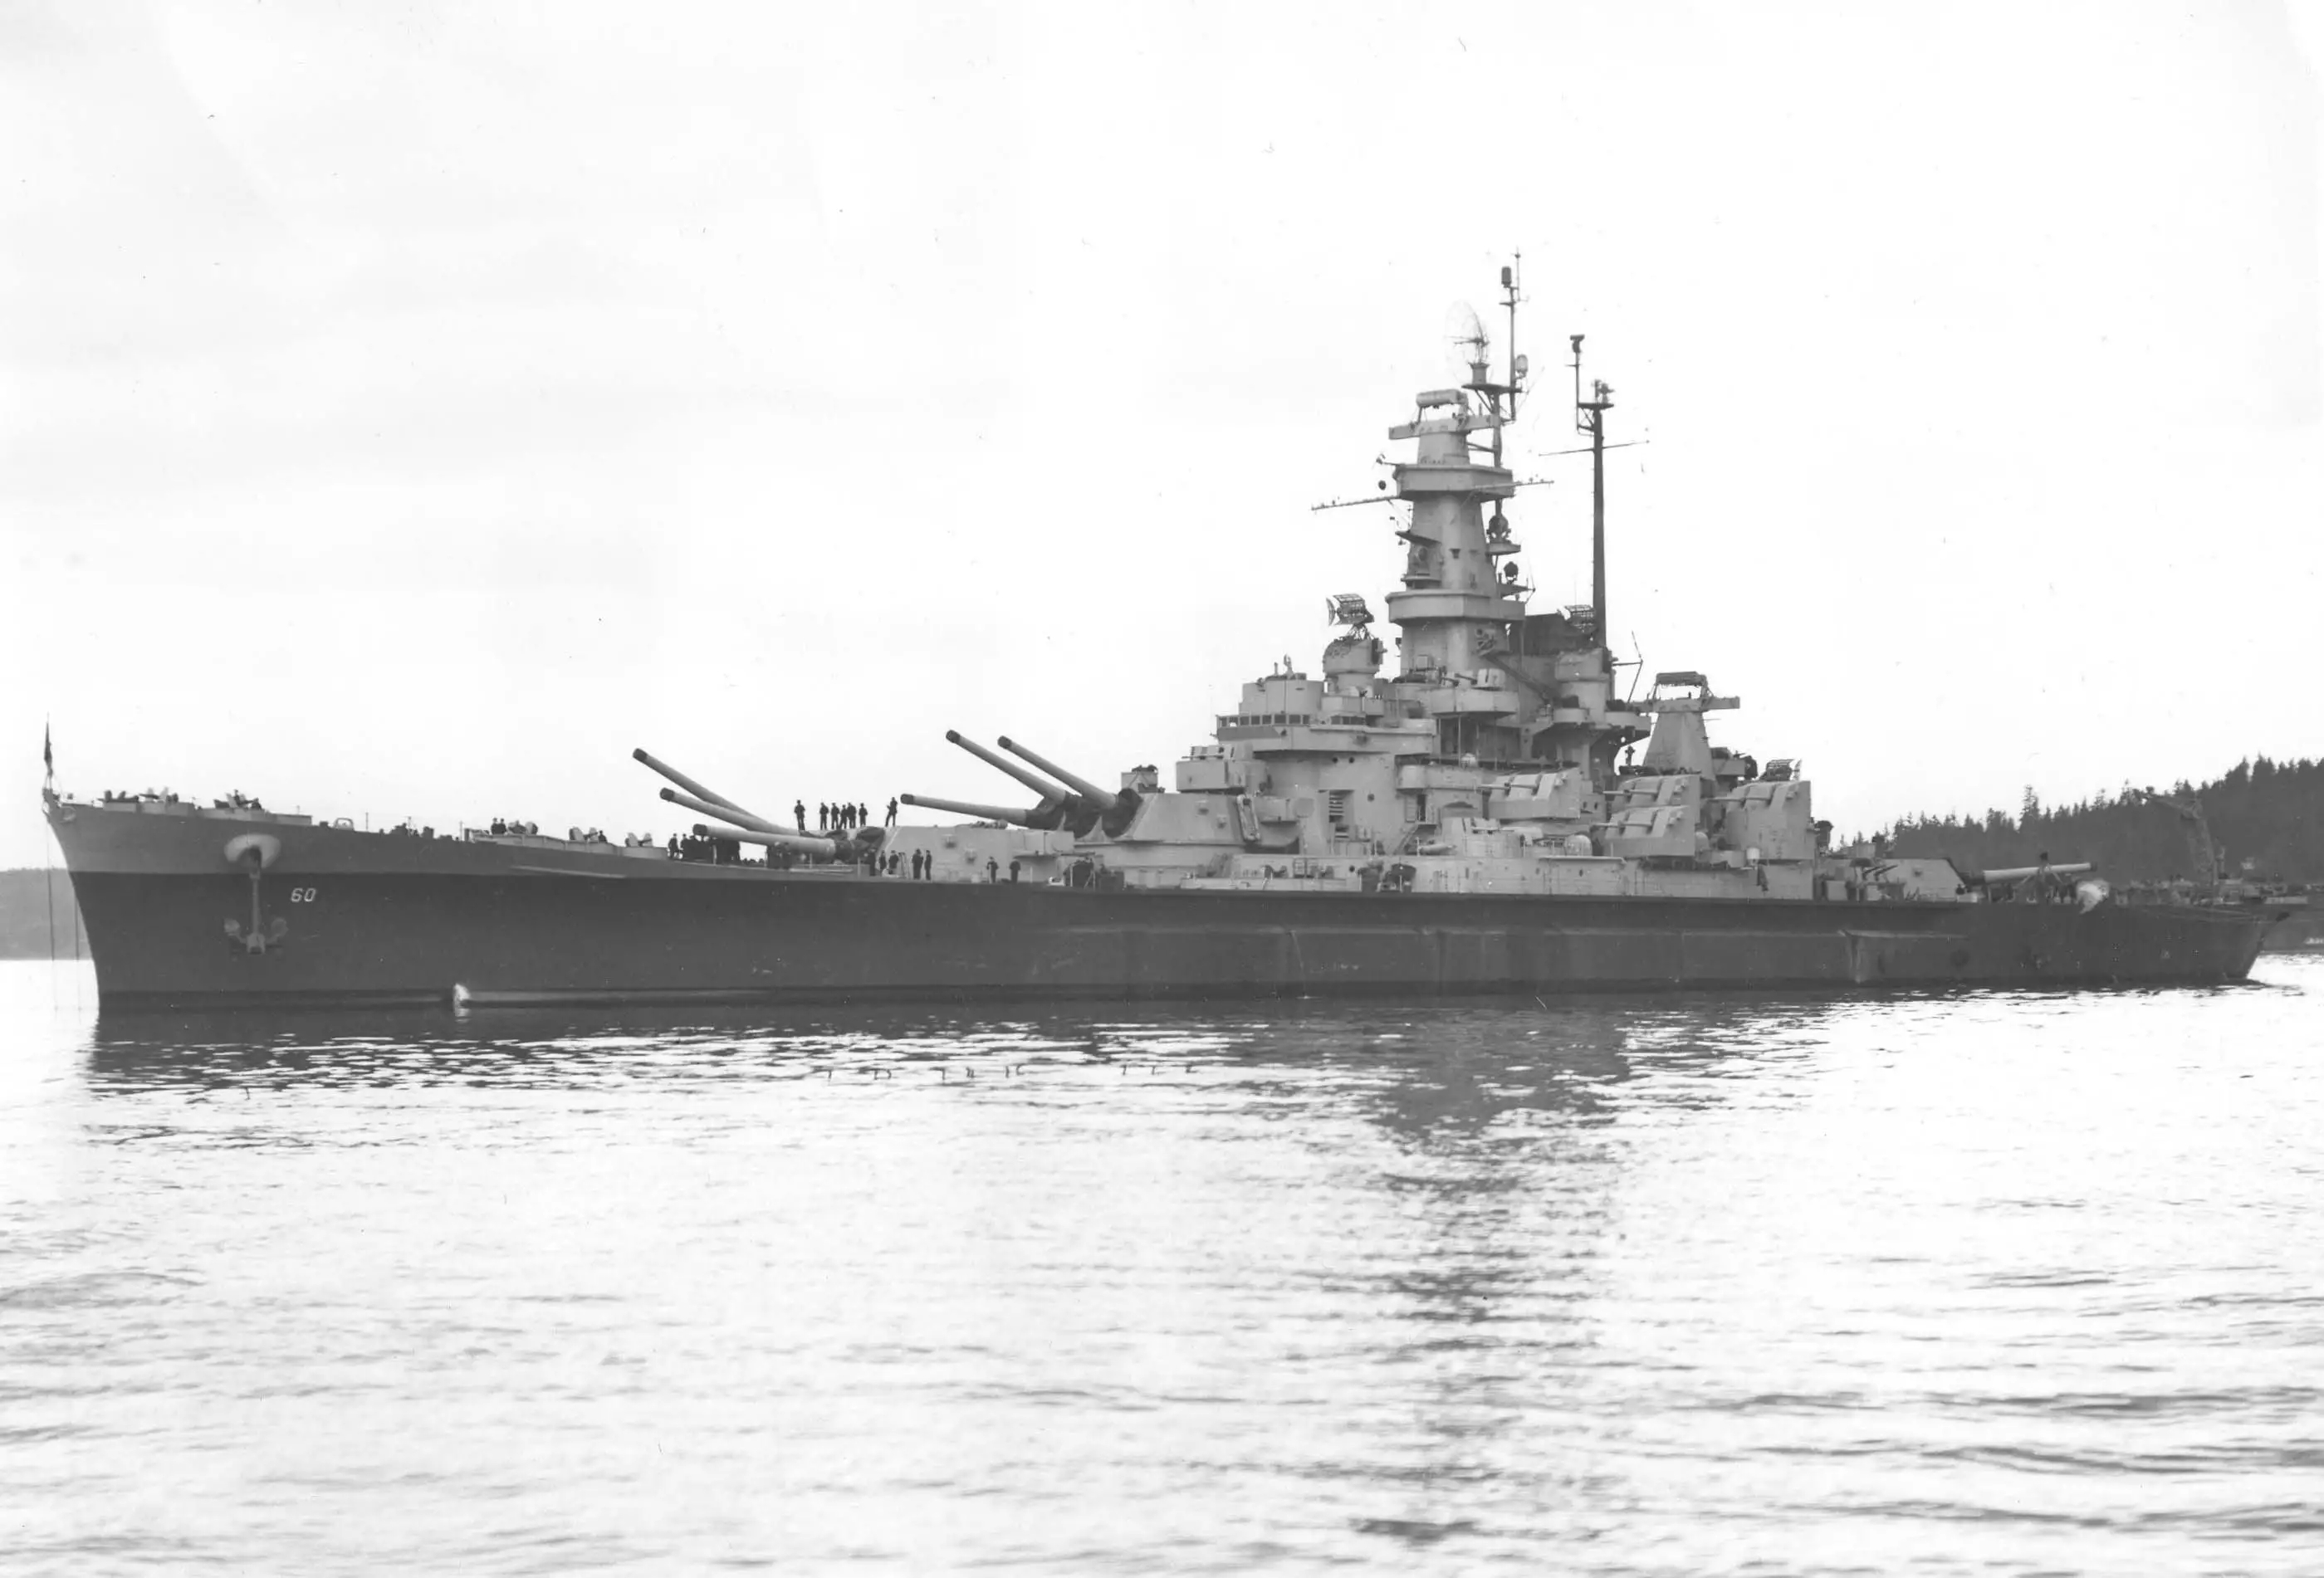 二战传奇战舰,16英寸巨炮火力,强大防空防御,赢得绰号